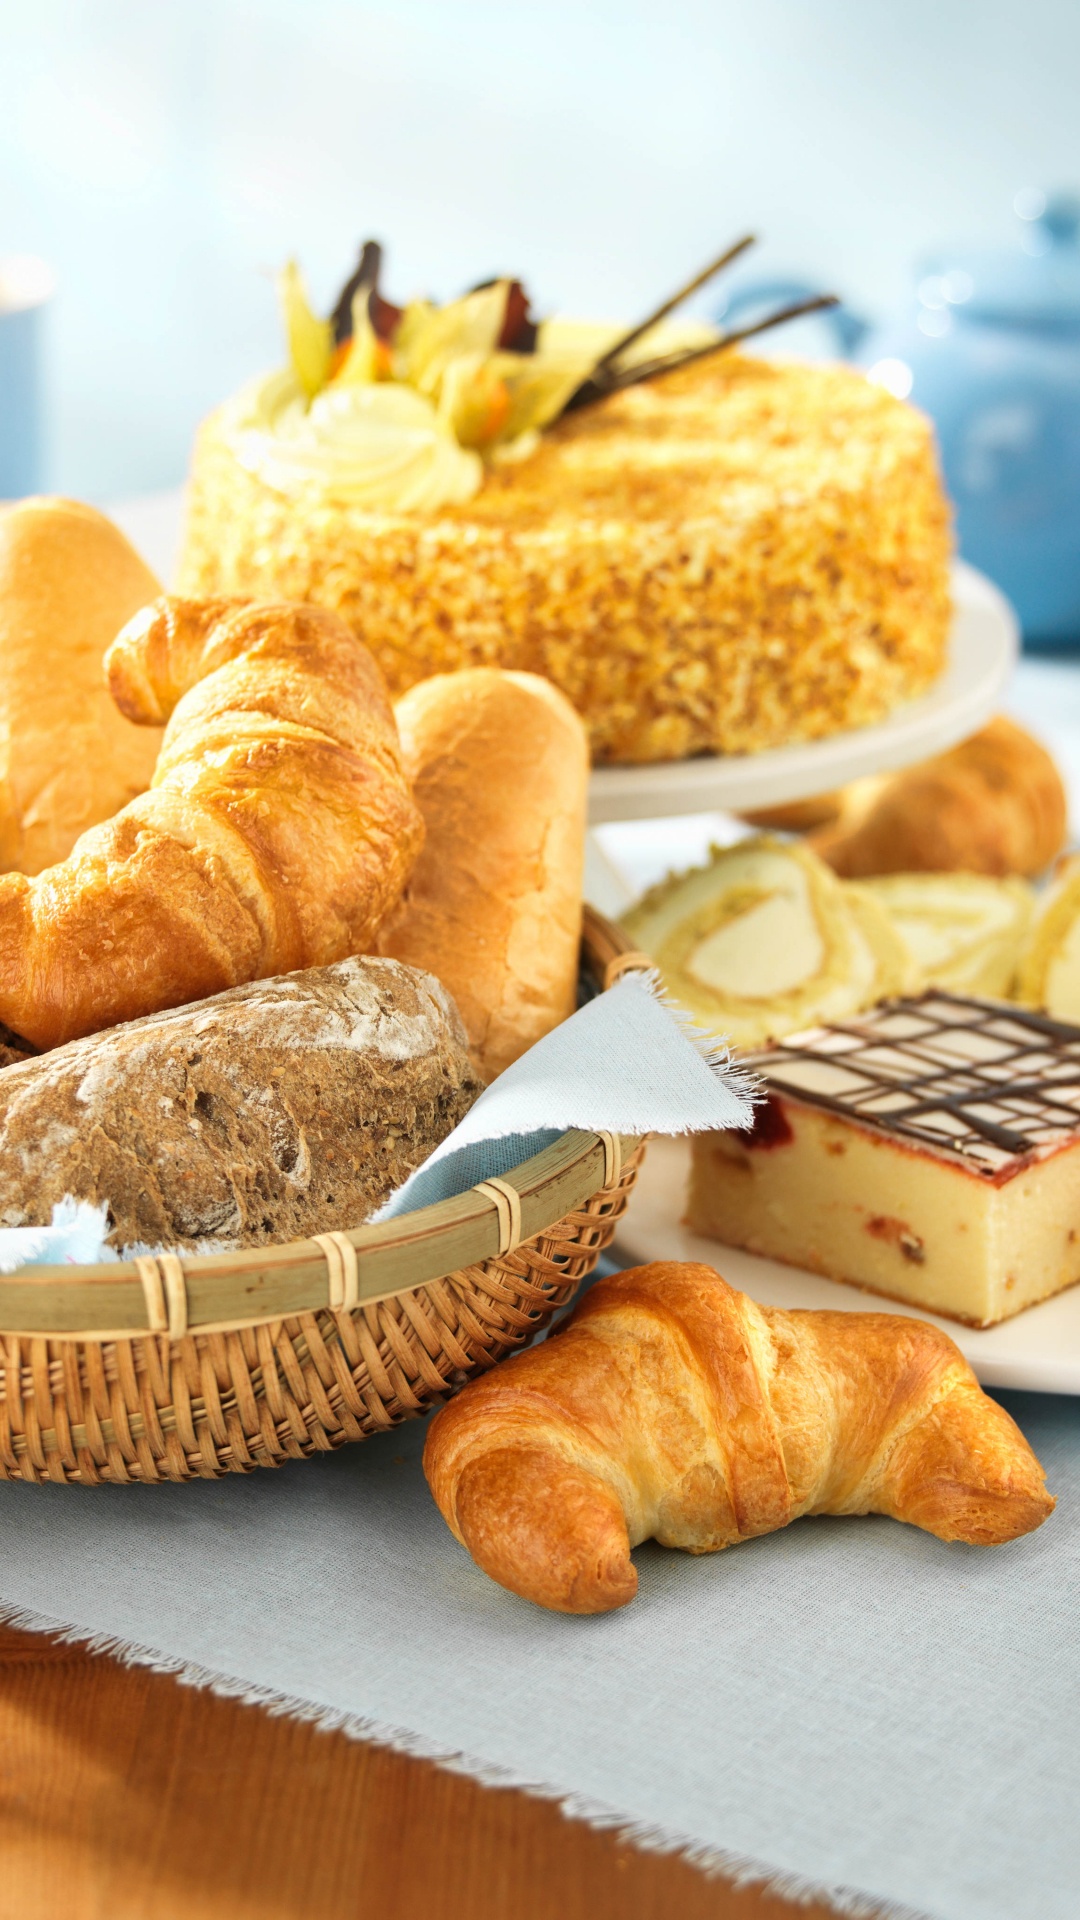 面包店, 牛角面包, 甜点, 糕点, 烘烤 壁纸 1080x1920 允许